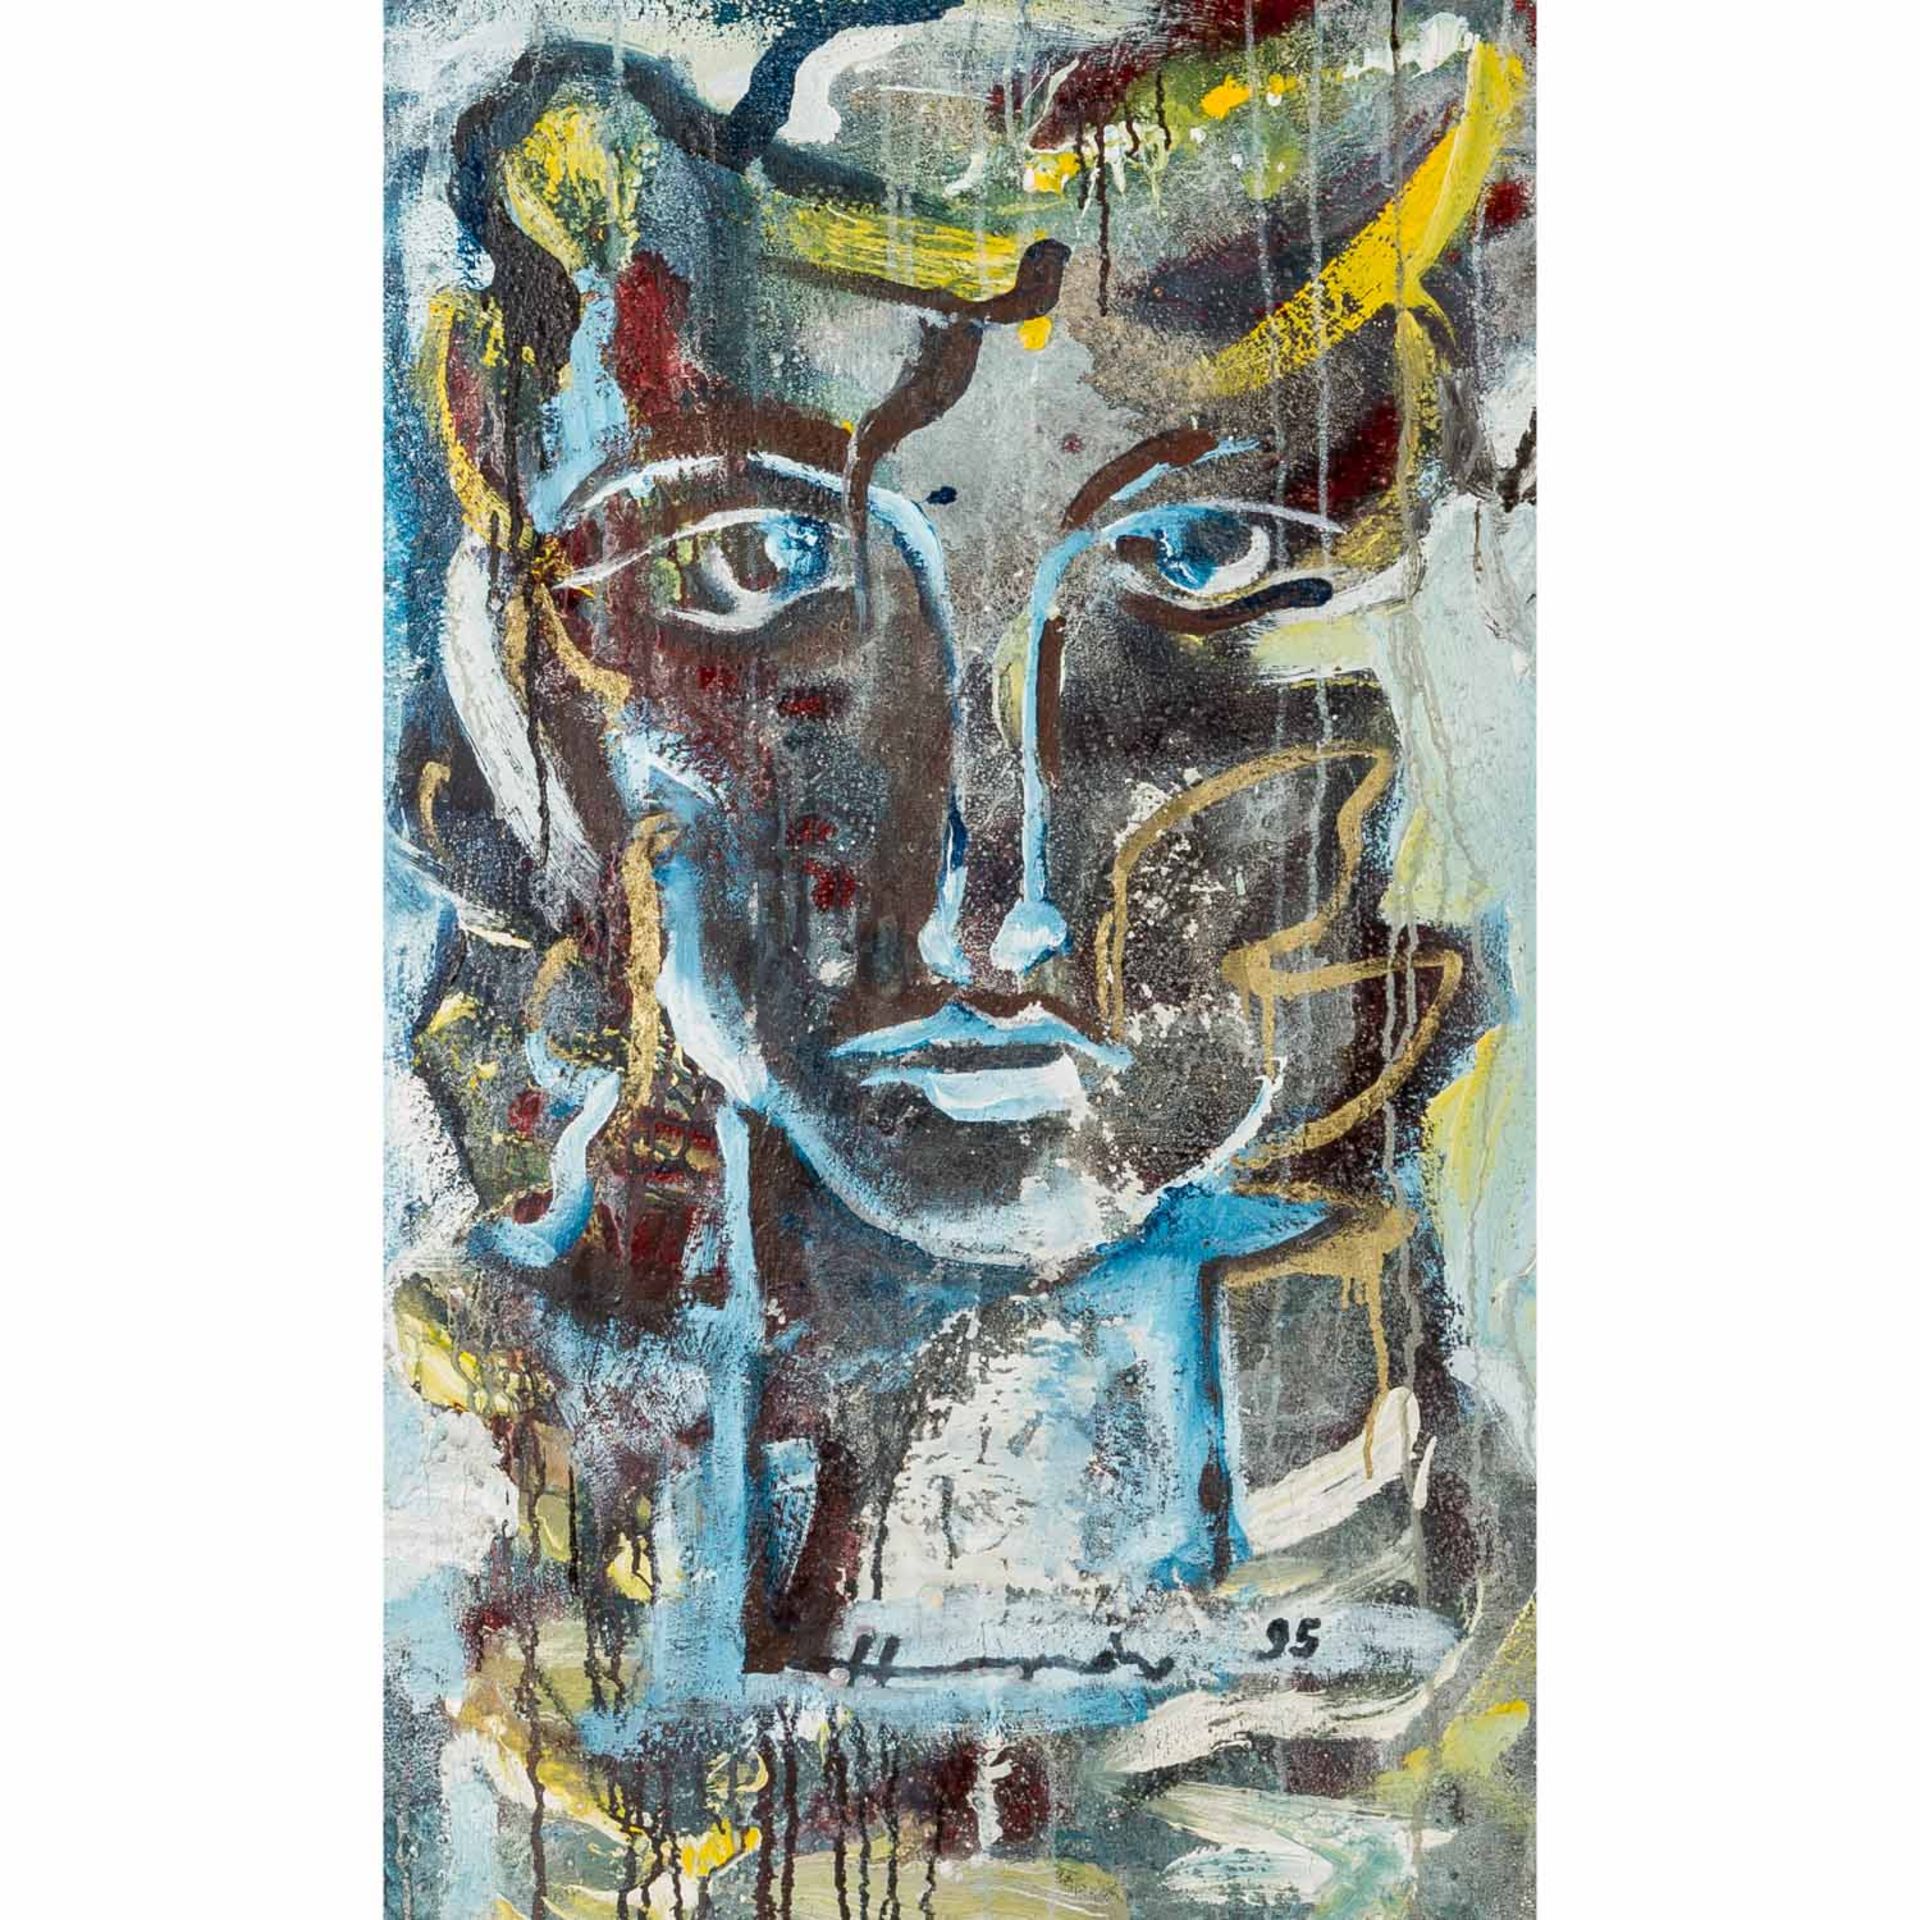 HIMMELREICH (?, KünstlerIn 20./21. Jh.), "Gesicht", Portrait einer jungen Frau, unten